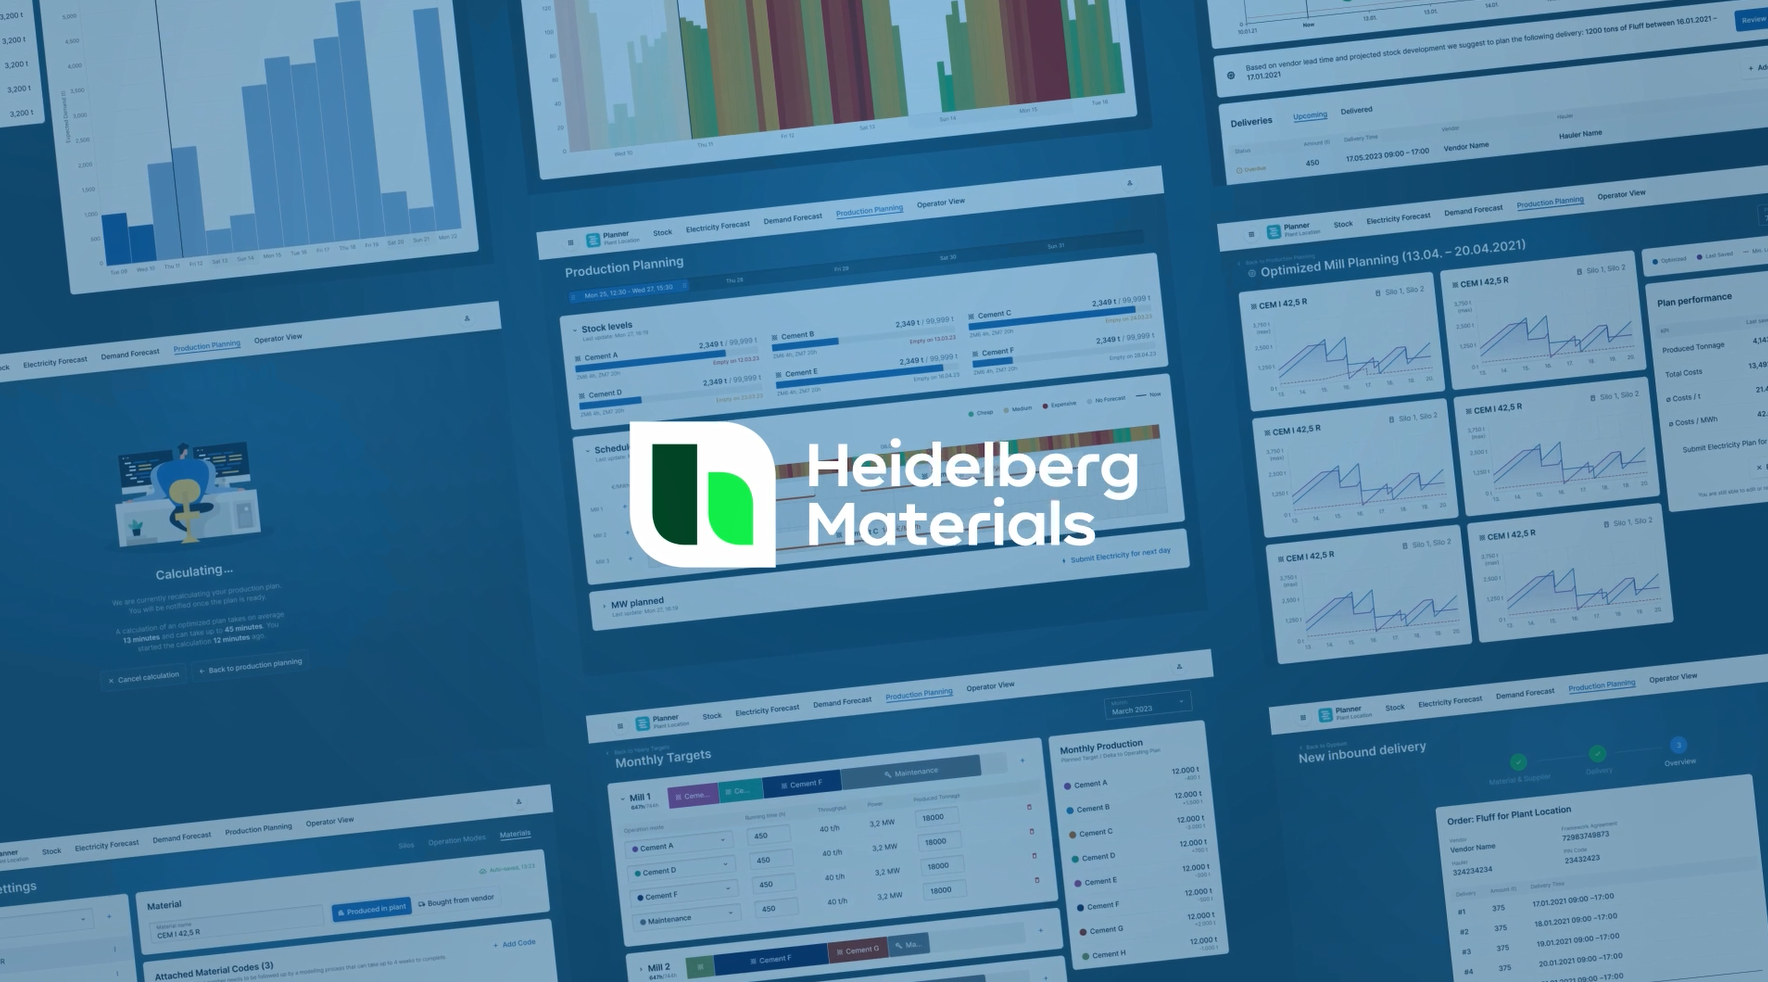 Auf blauem Hintergrund sind zahlreiche Balken- und Liniengrafiken sowie zahlen zu sehen, davor ist im Vordergrund das Heidelberg-Materials-Logo zu sehen.